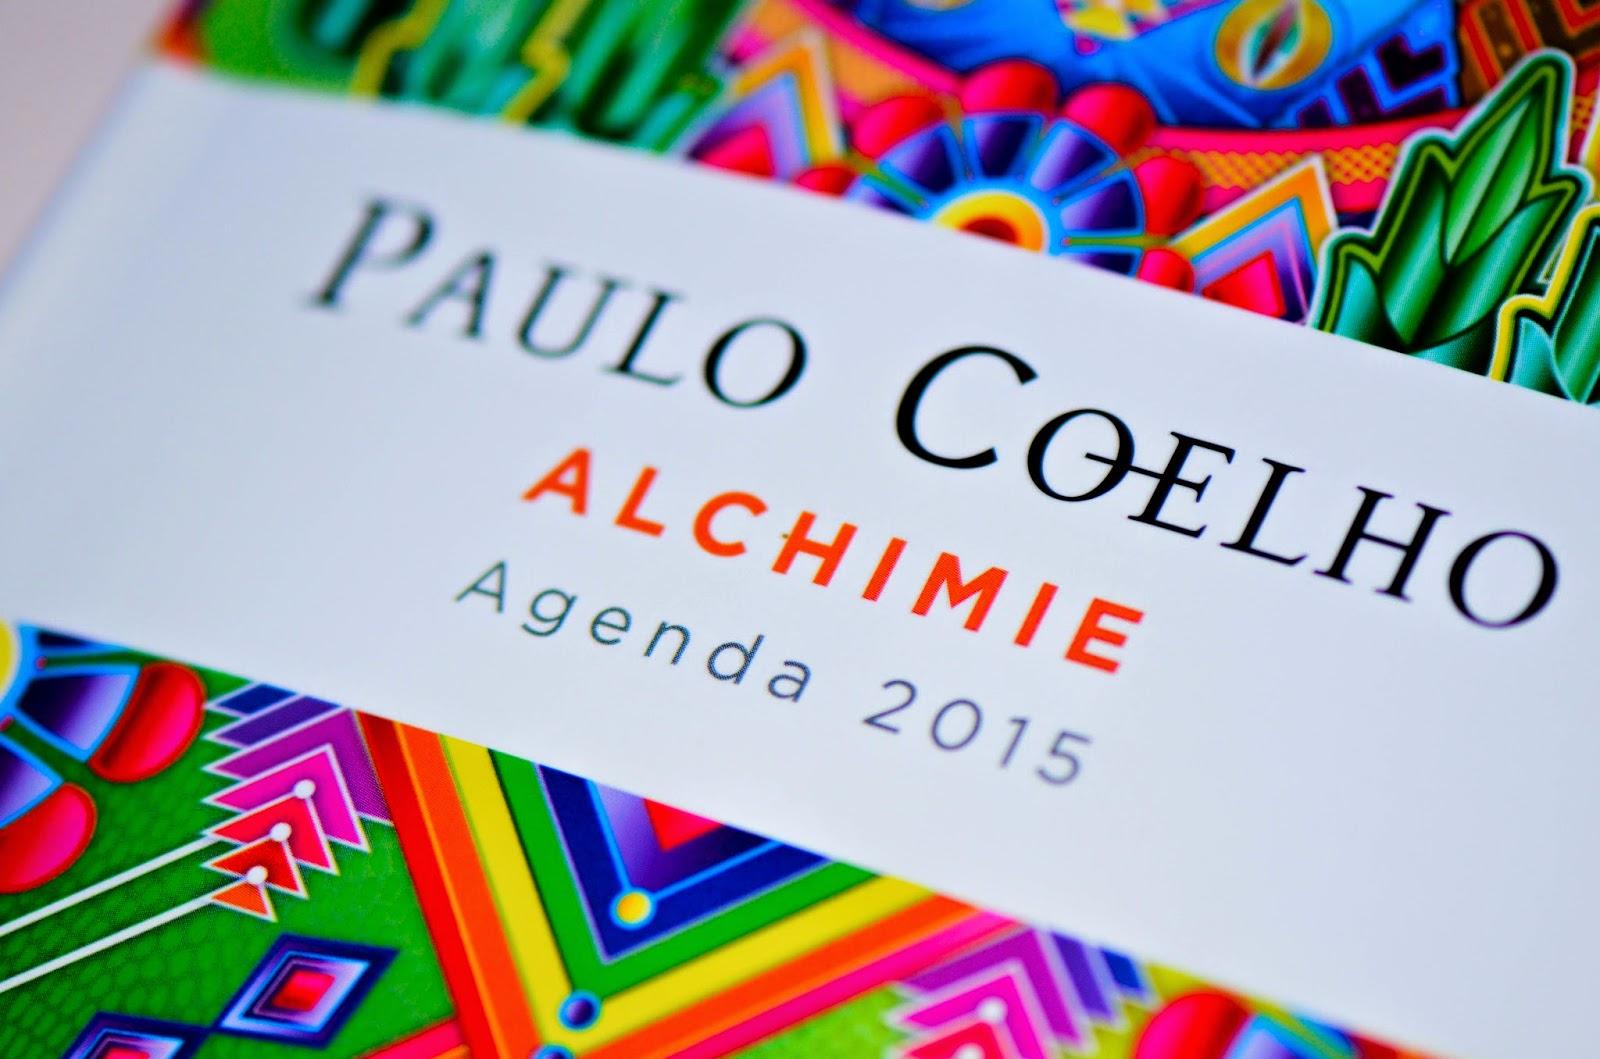 L'agenda 2015 signé Paulo Coelho